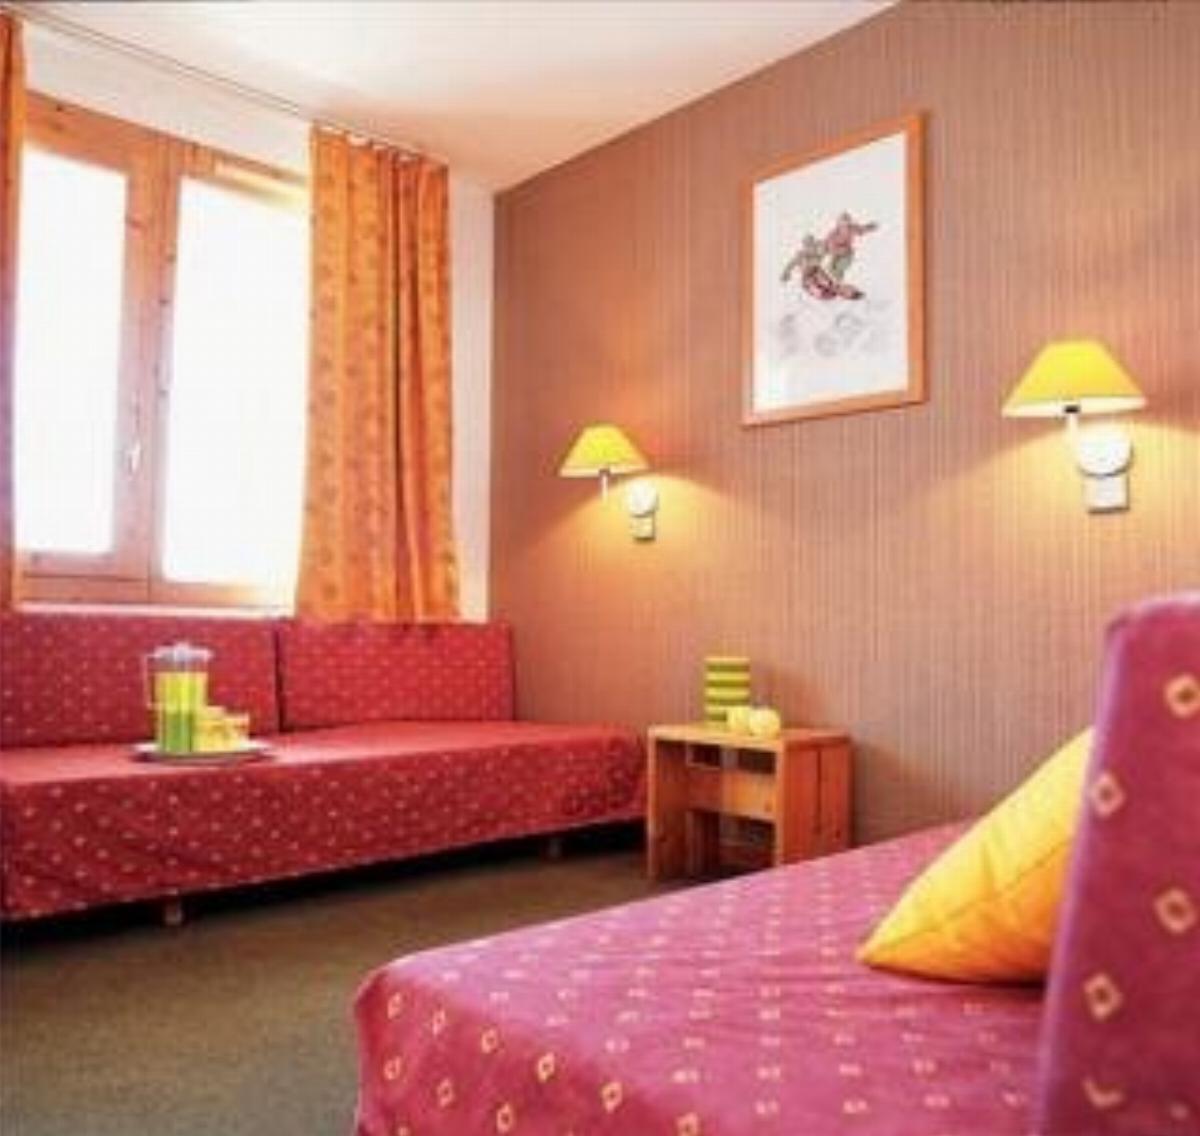 Maeva Planchamp Et Mottet Hotel French Alps France